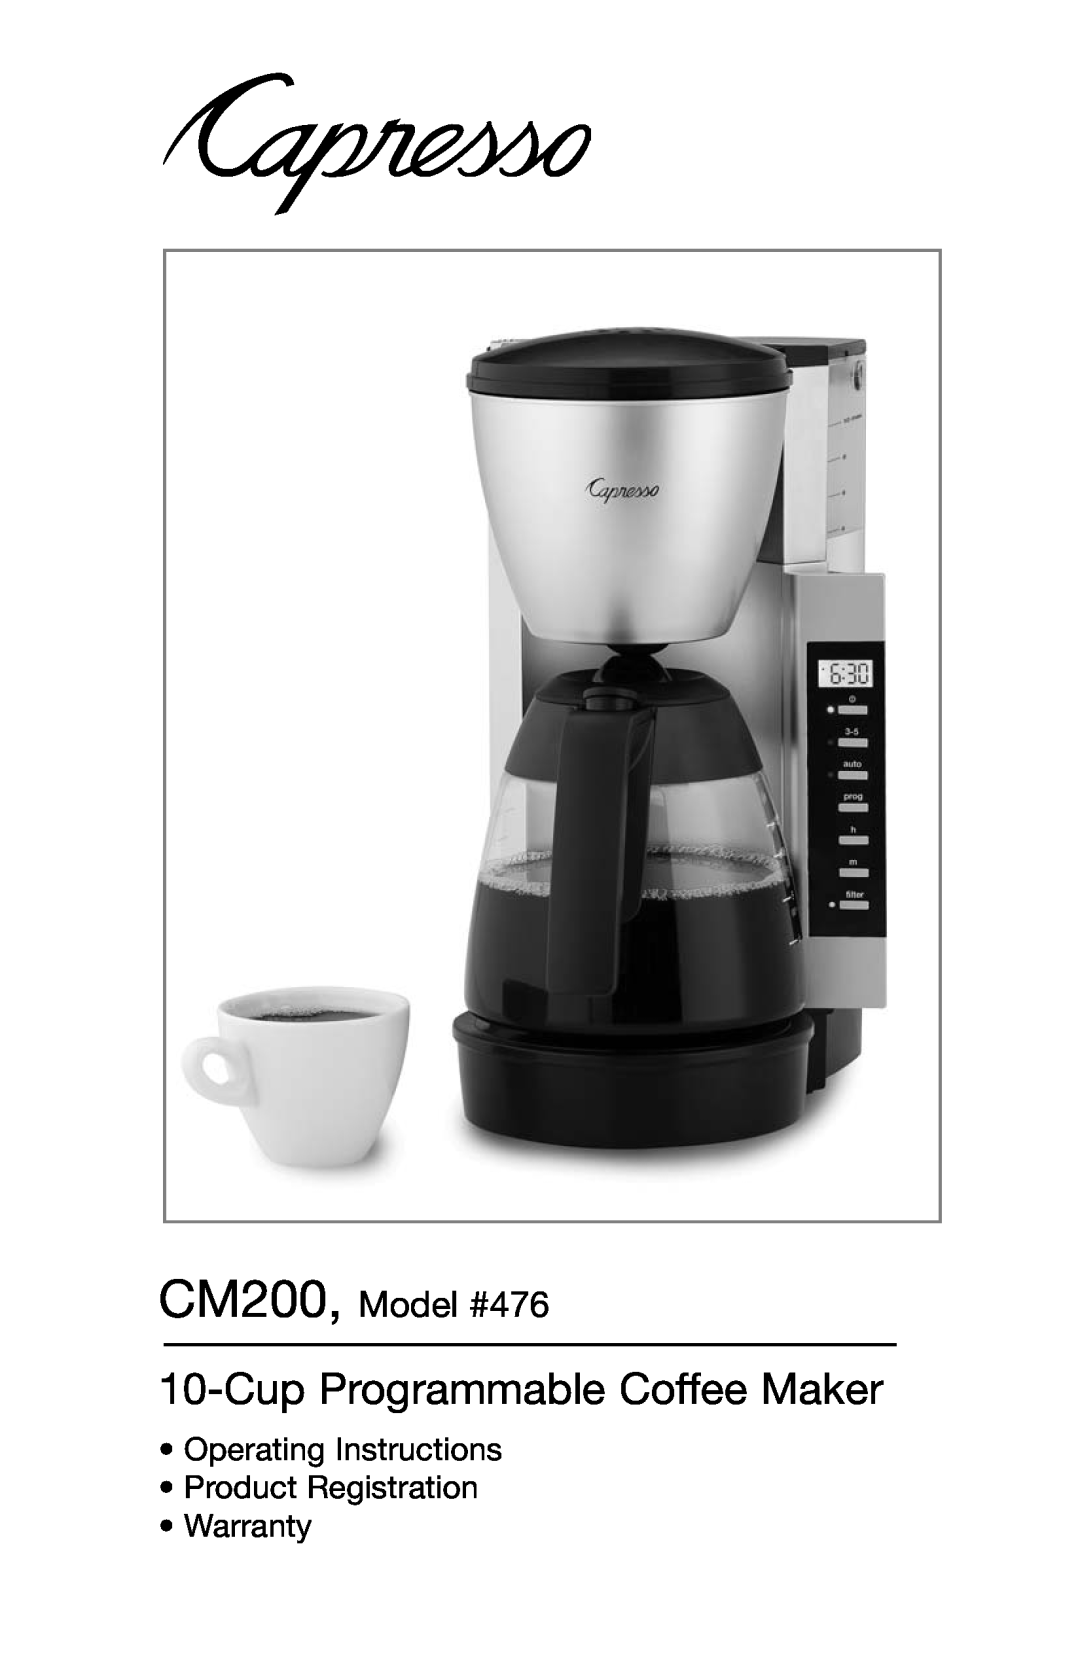 Capresso warranty Cup Programmable Coffee Maker, CM200, Model #476 